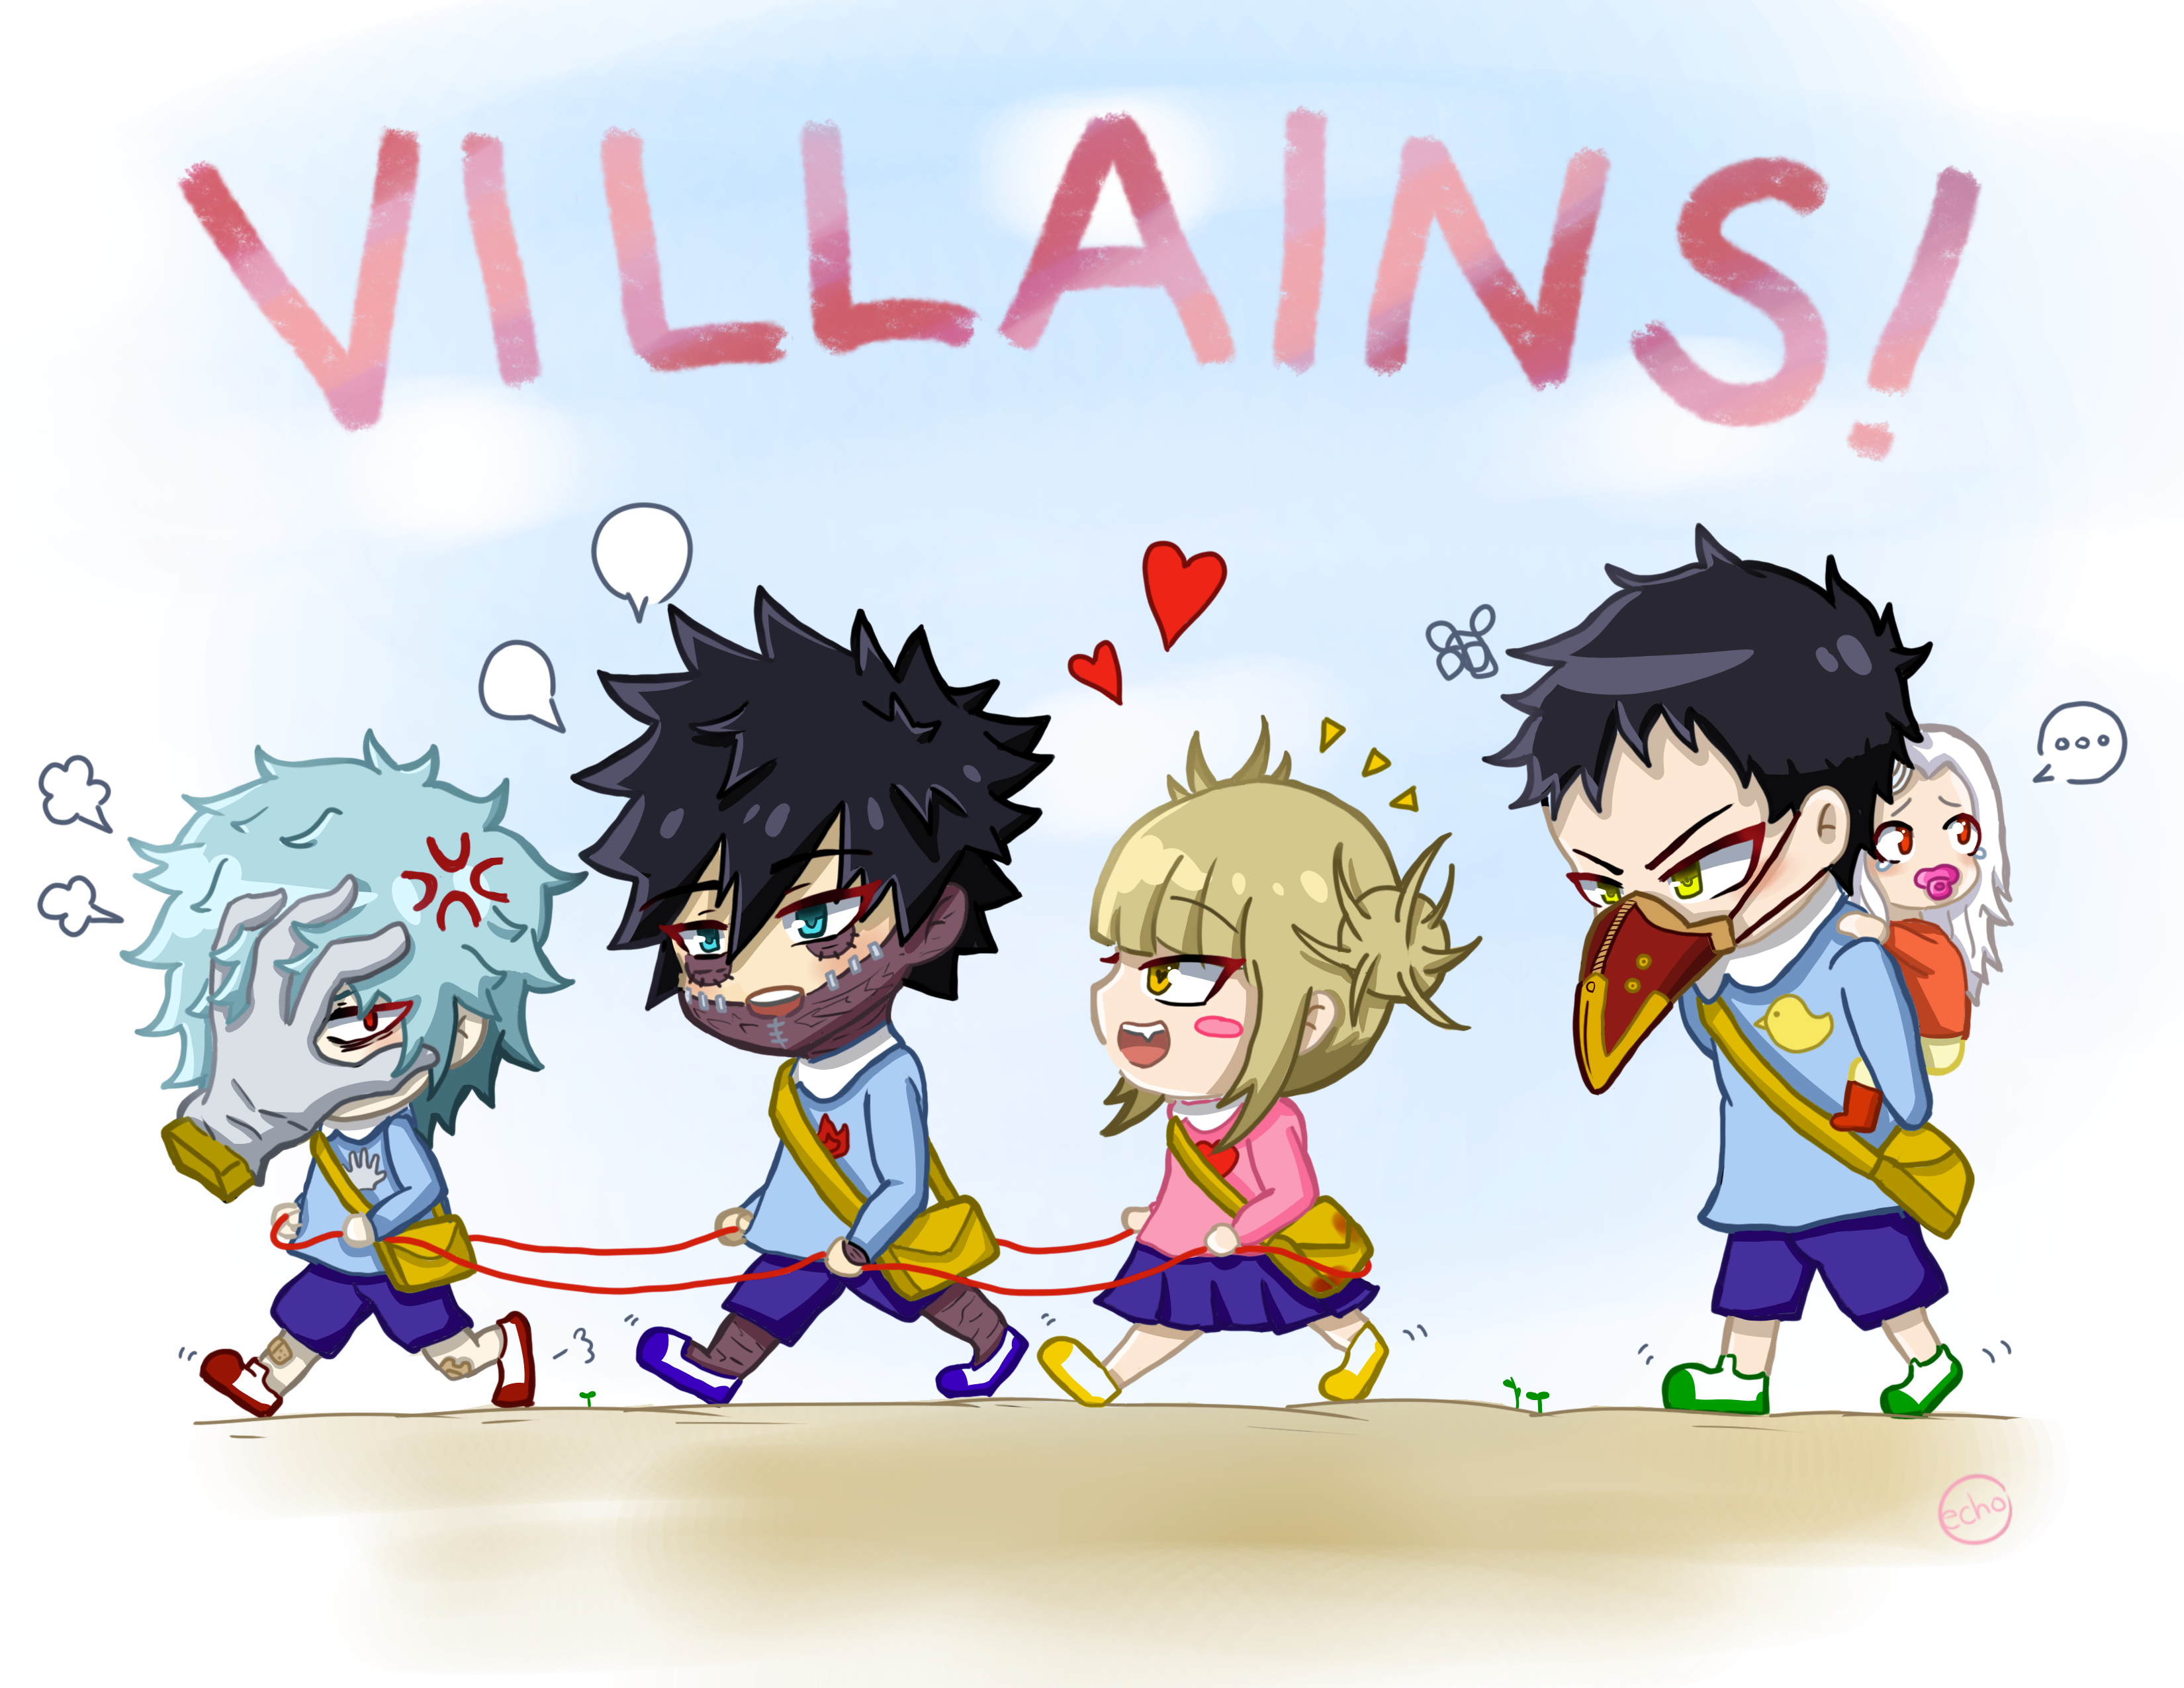 Villains! HD Wallpaper